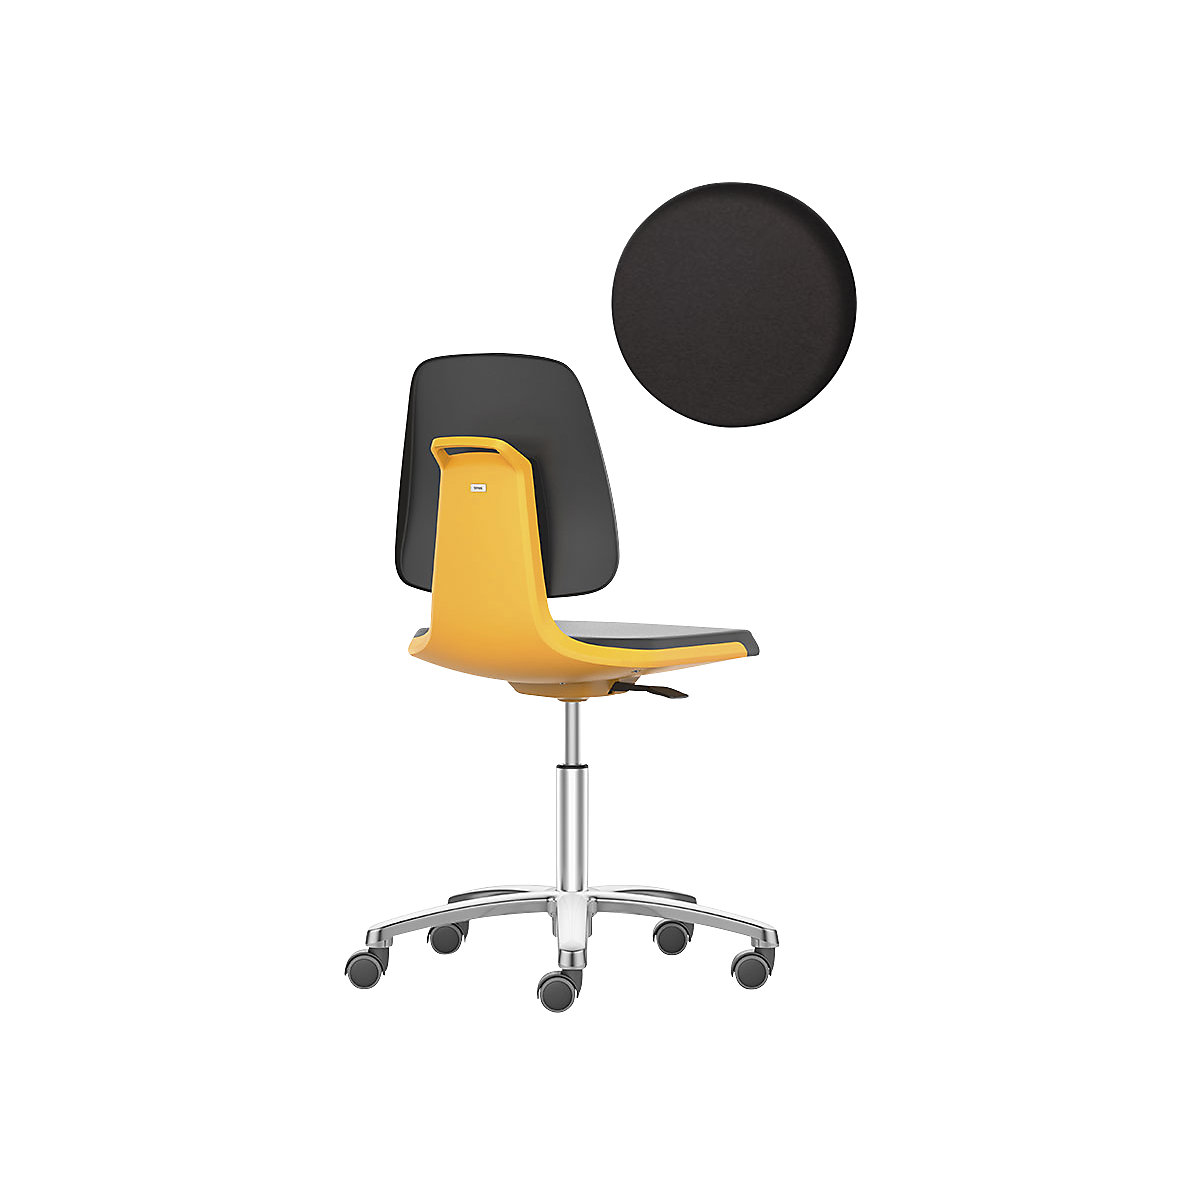 Pracovná otočná stolička LABSIT – bimos, päť nôh s kolieskami, sedadlo z PU peny, oranžová-25